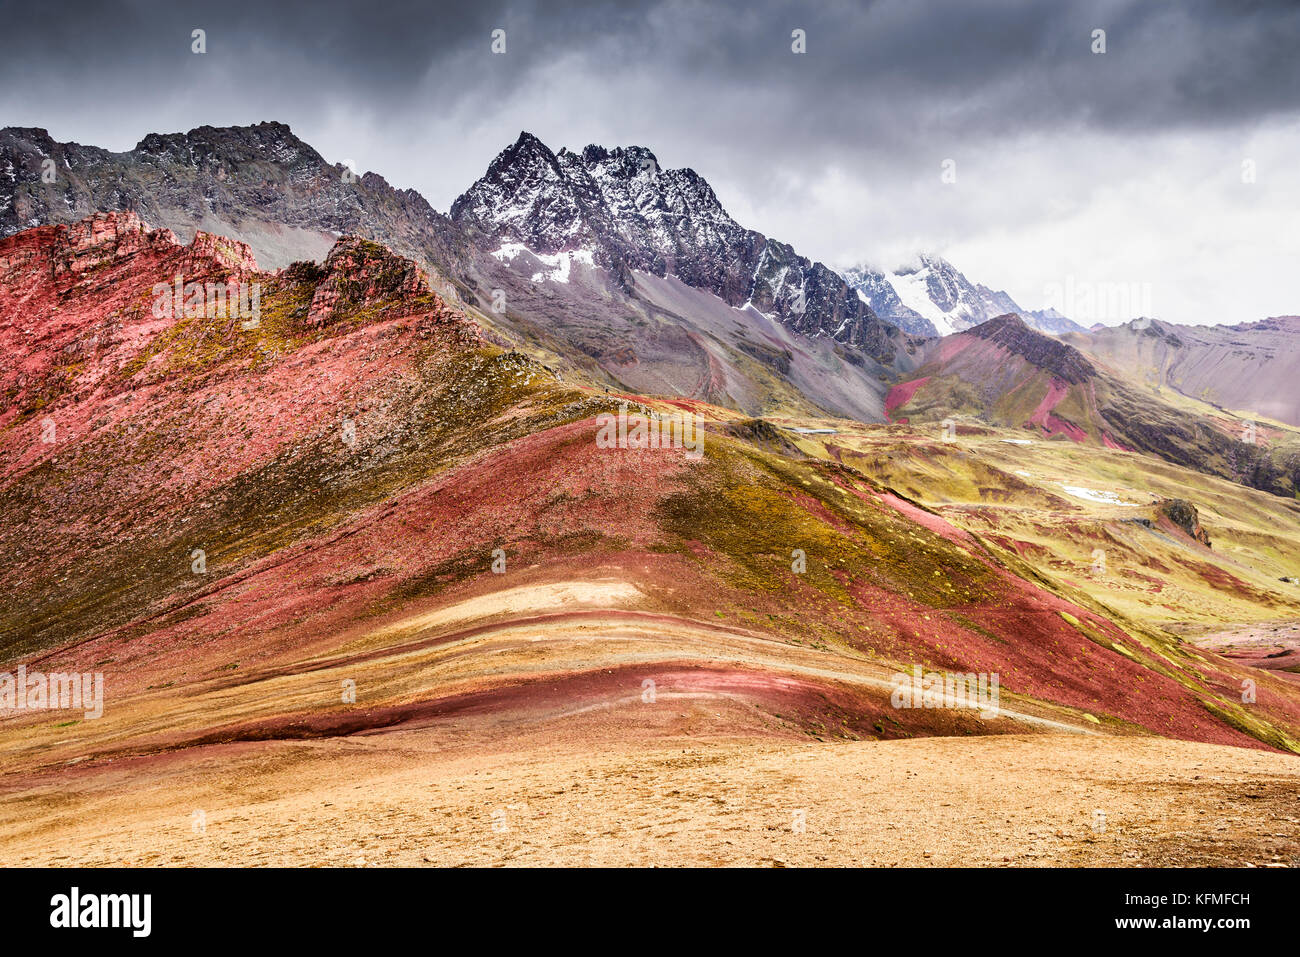 Vinicunca, Peru - Cordillera Vilcanota und Rainbow Mountain (5200 m) in den Anden, Cordillera de los Andes, Cusco Region in Südamerika. Stockfoto